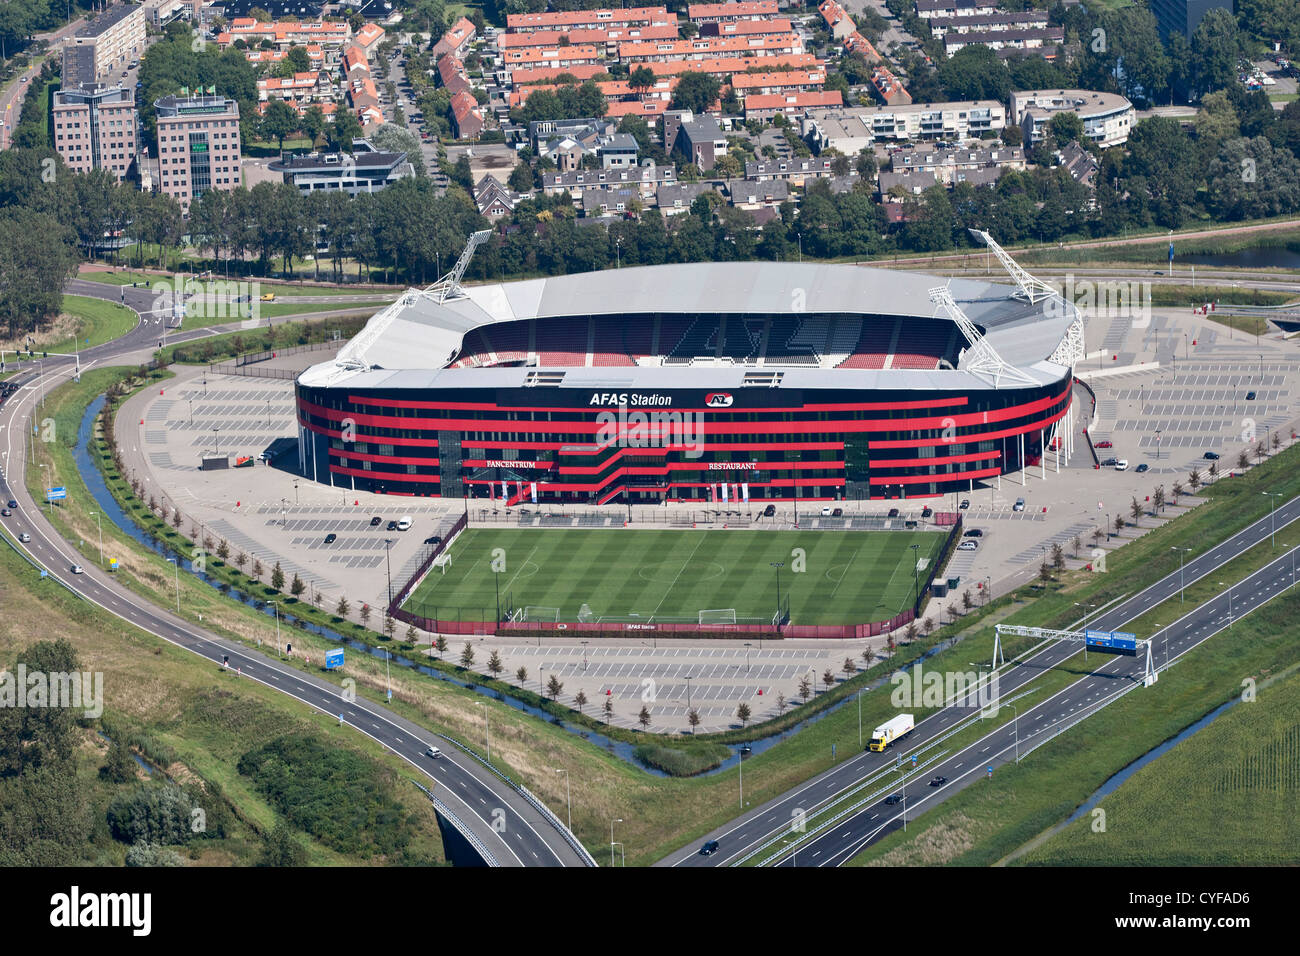 Les Pays-Bas, Alkmaar. Stade de Football de AZ. Vue aérienne. Banque D'Images